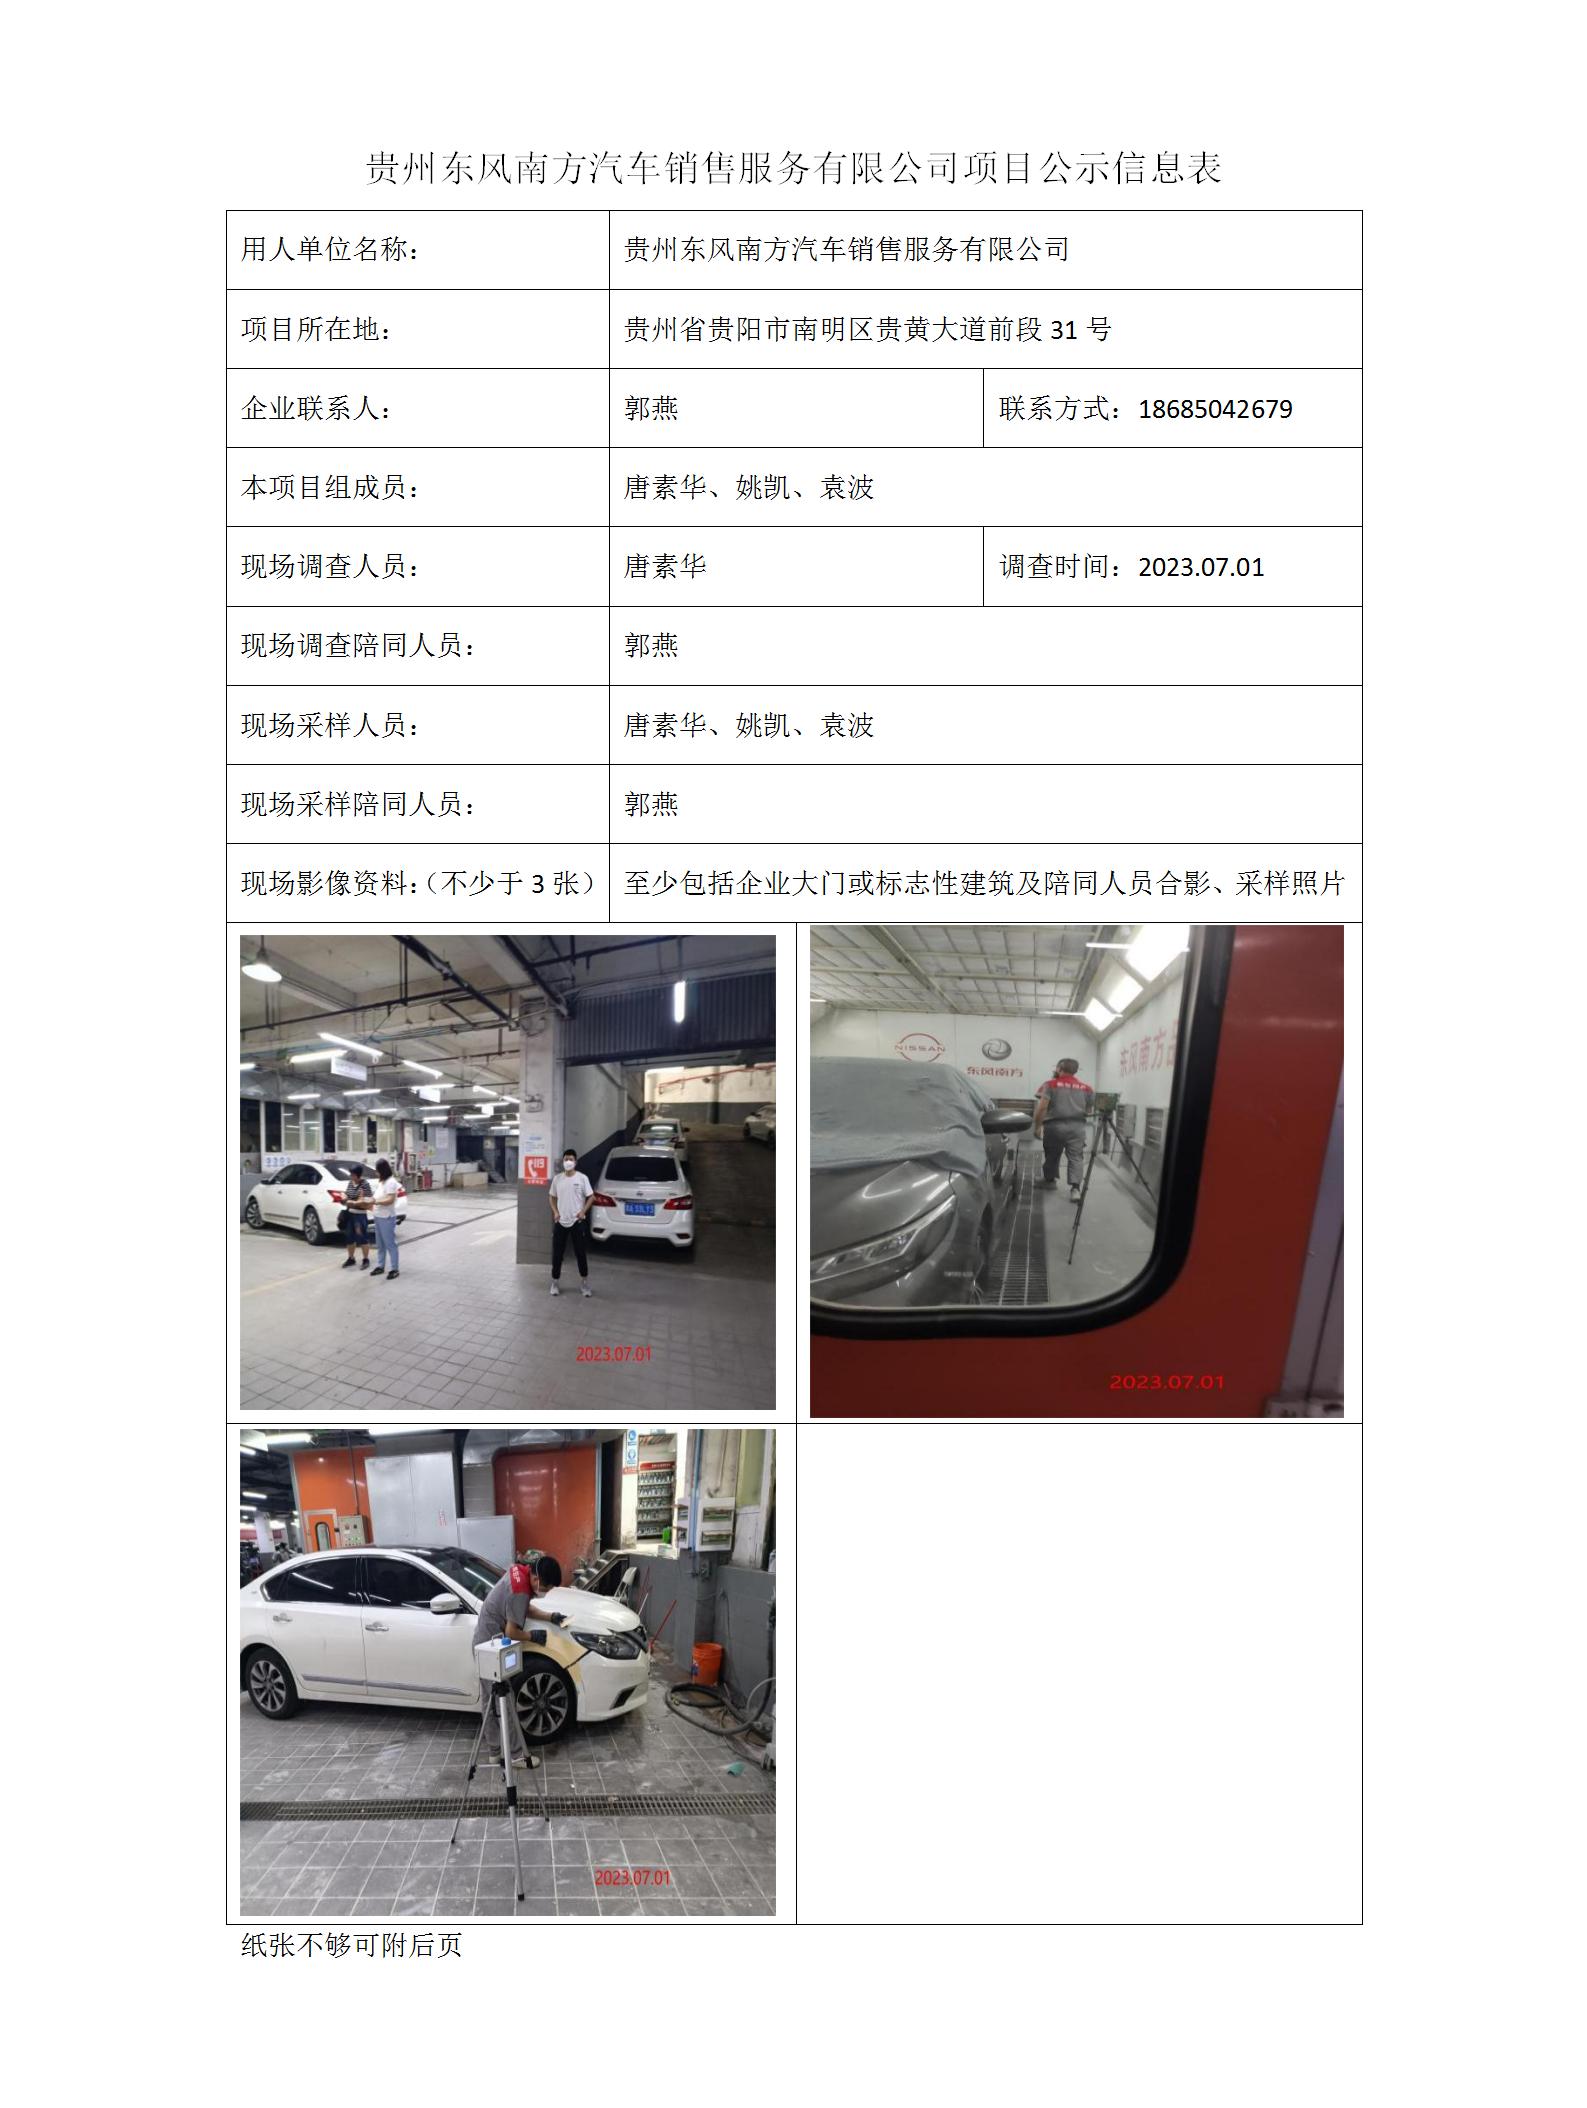 贵州东风南方汽车销售服务有限公司项目公示信息表_01.jpg